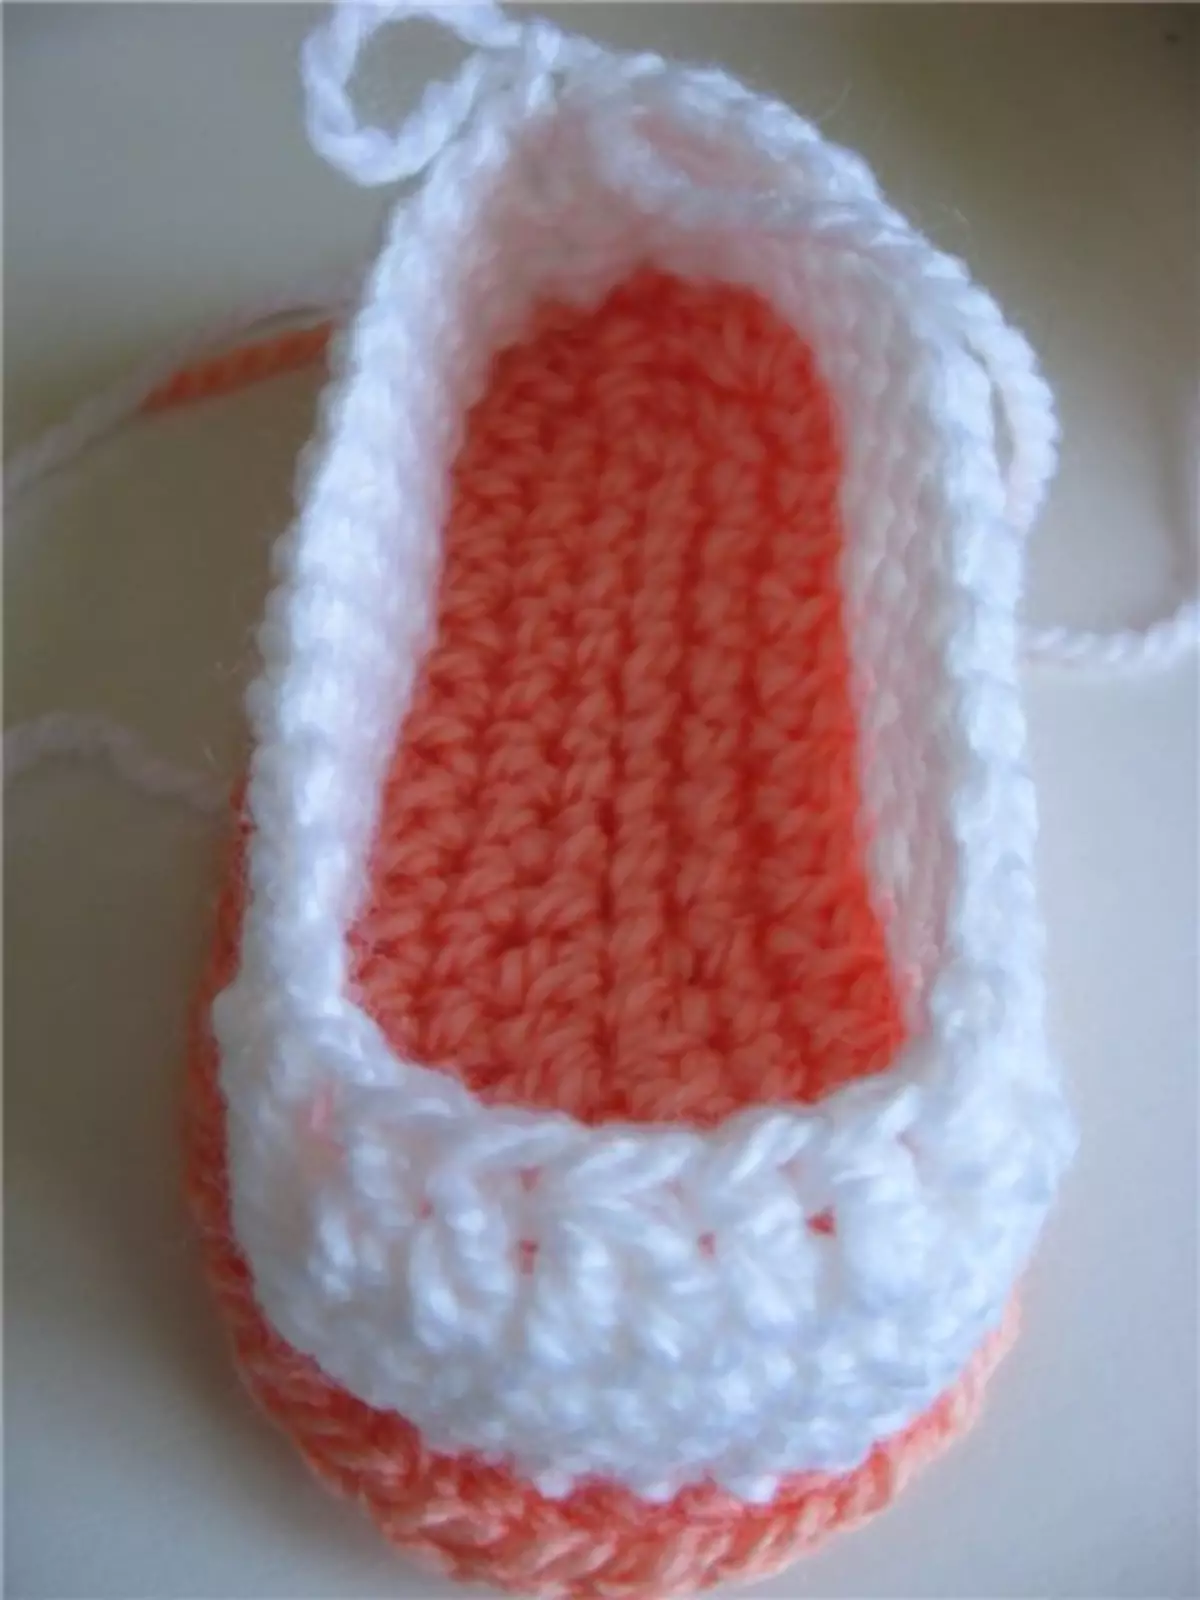 Awọn bata orunkun crochet fun awọn ọmọ tuntun: kilasi titunto pẹlu fidio